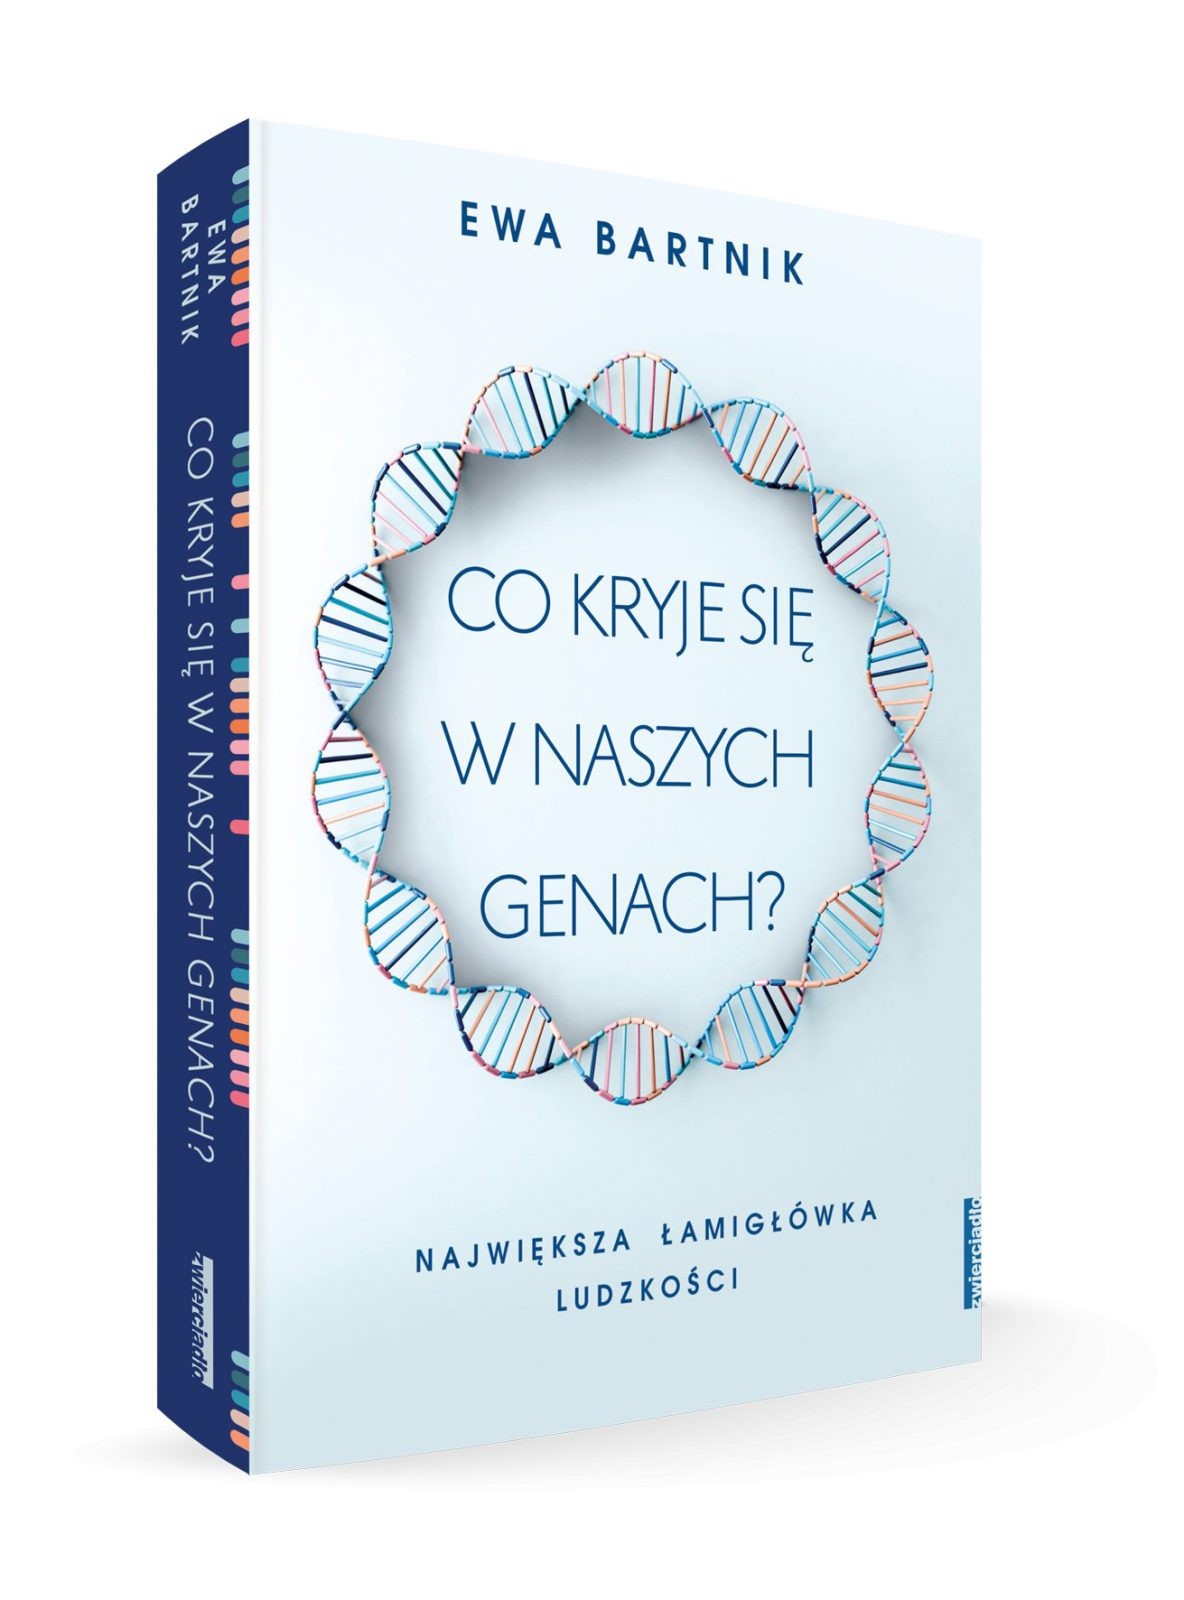 Twoje geny są jak jeden superpodręcznik. Wywiad z autorką książki “Co kryje się w naszych genach?”